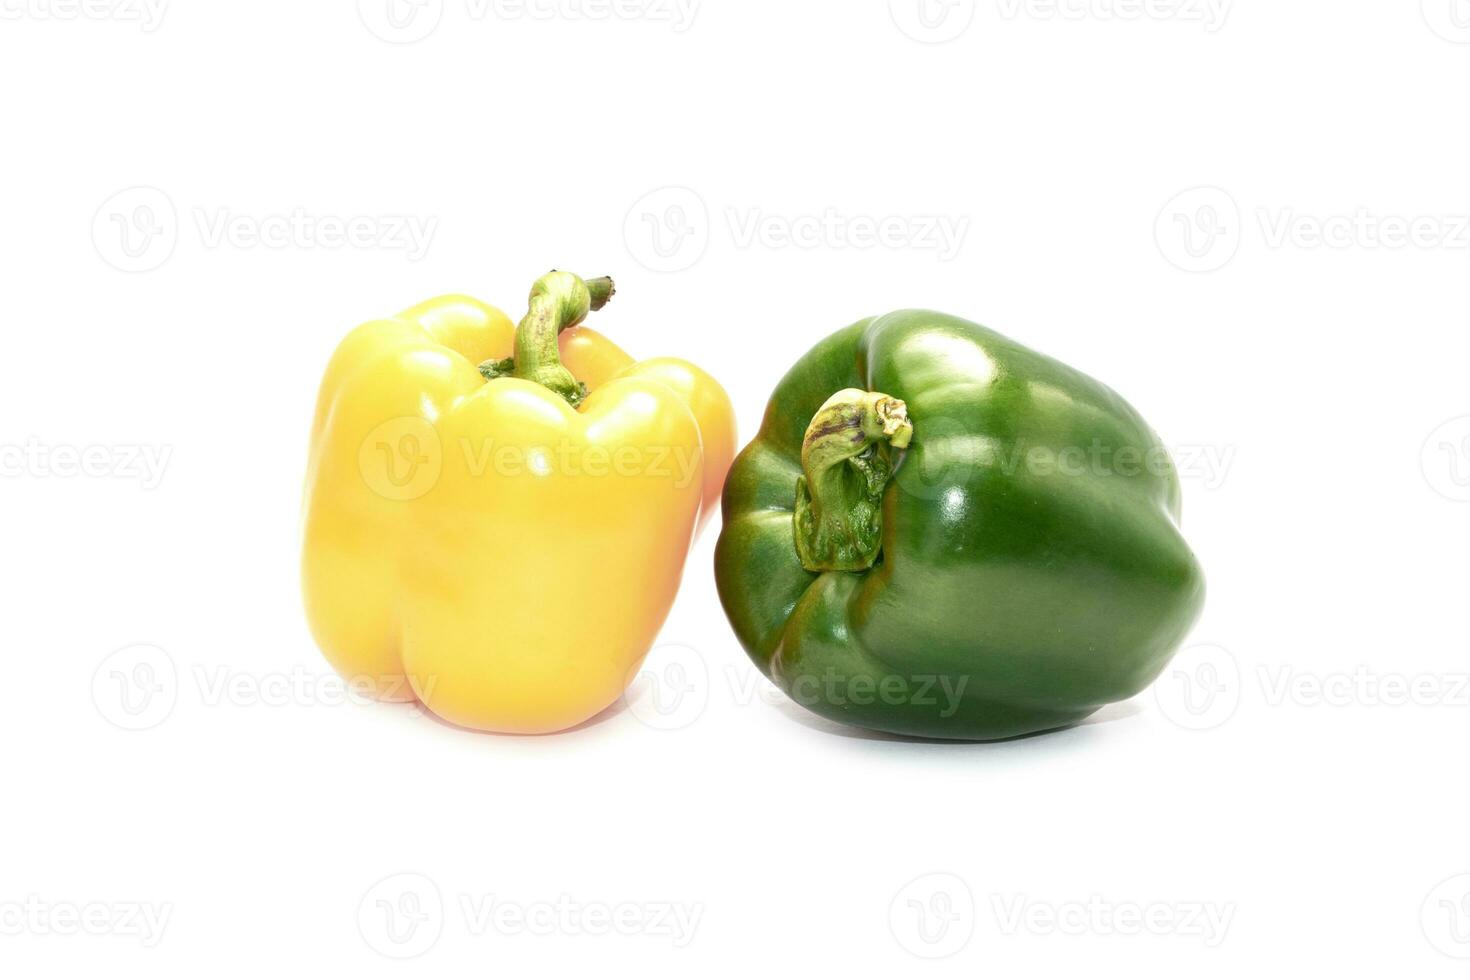 frische rote, grüne Paprika isoliert auf weißem Hintergrund. diätkost und veganes konzept foto